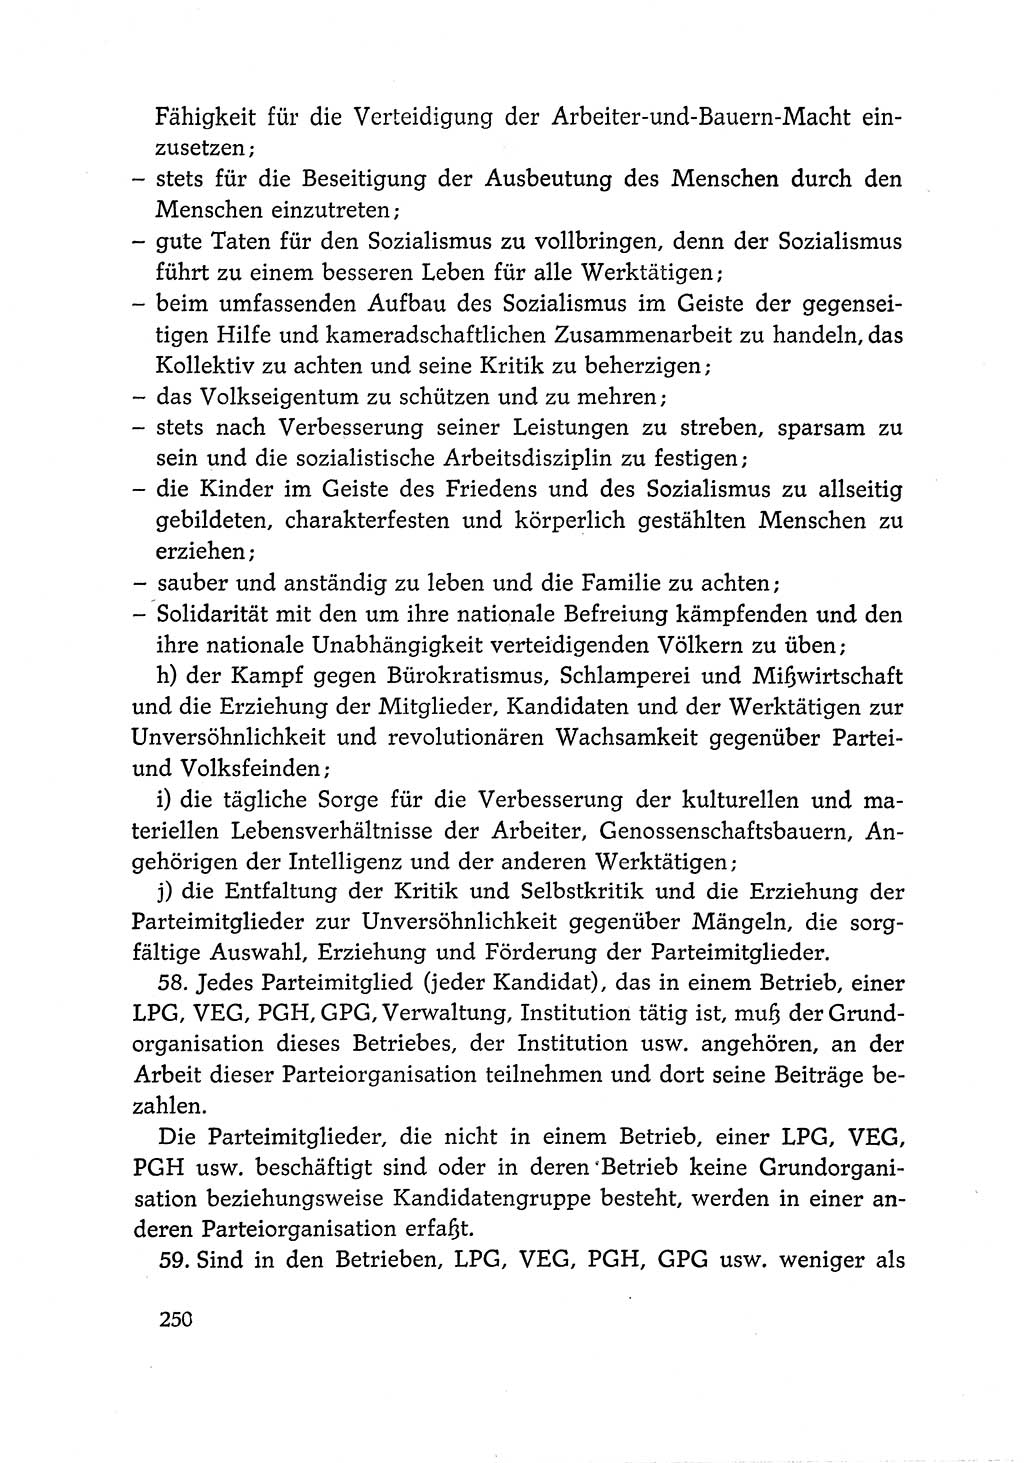 Dokumente der Sozialistischen Einheitspartei Deutschlands (SED) [Deutsche Demokratische Republik (DDR)] 1966-1967, Seite 250 (Dok. SED DDR 1966-1967, S. 250)